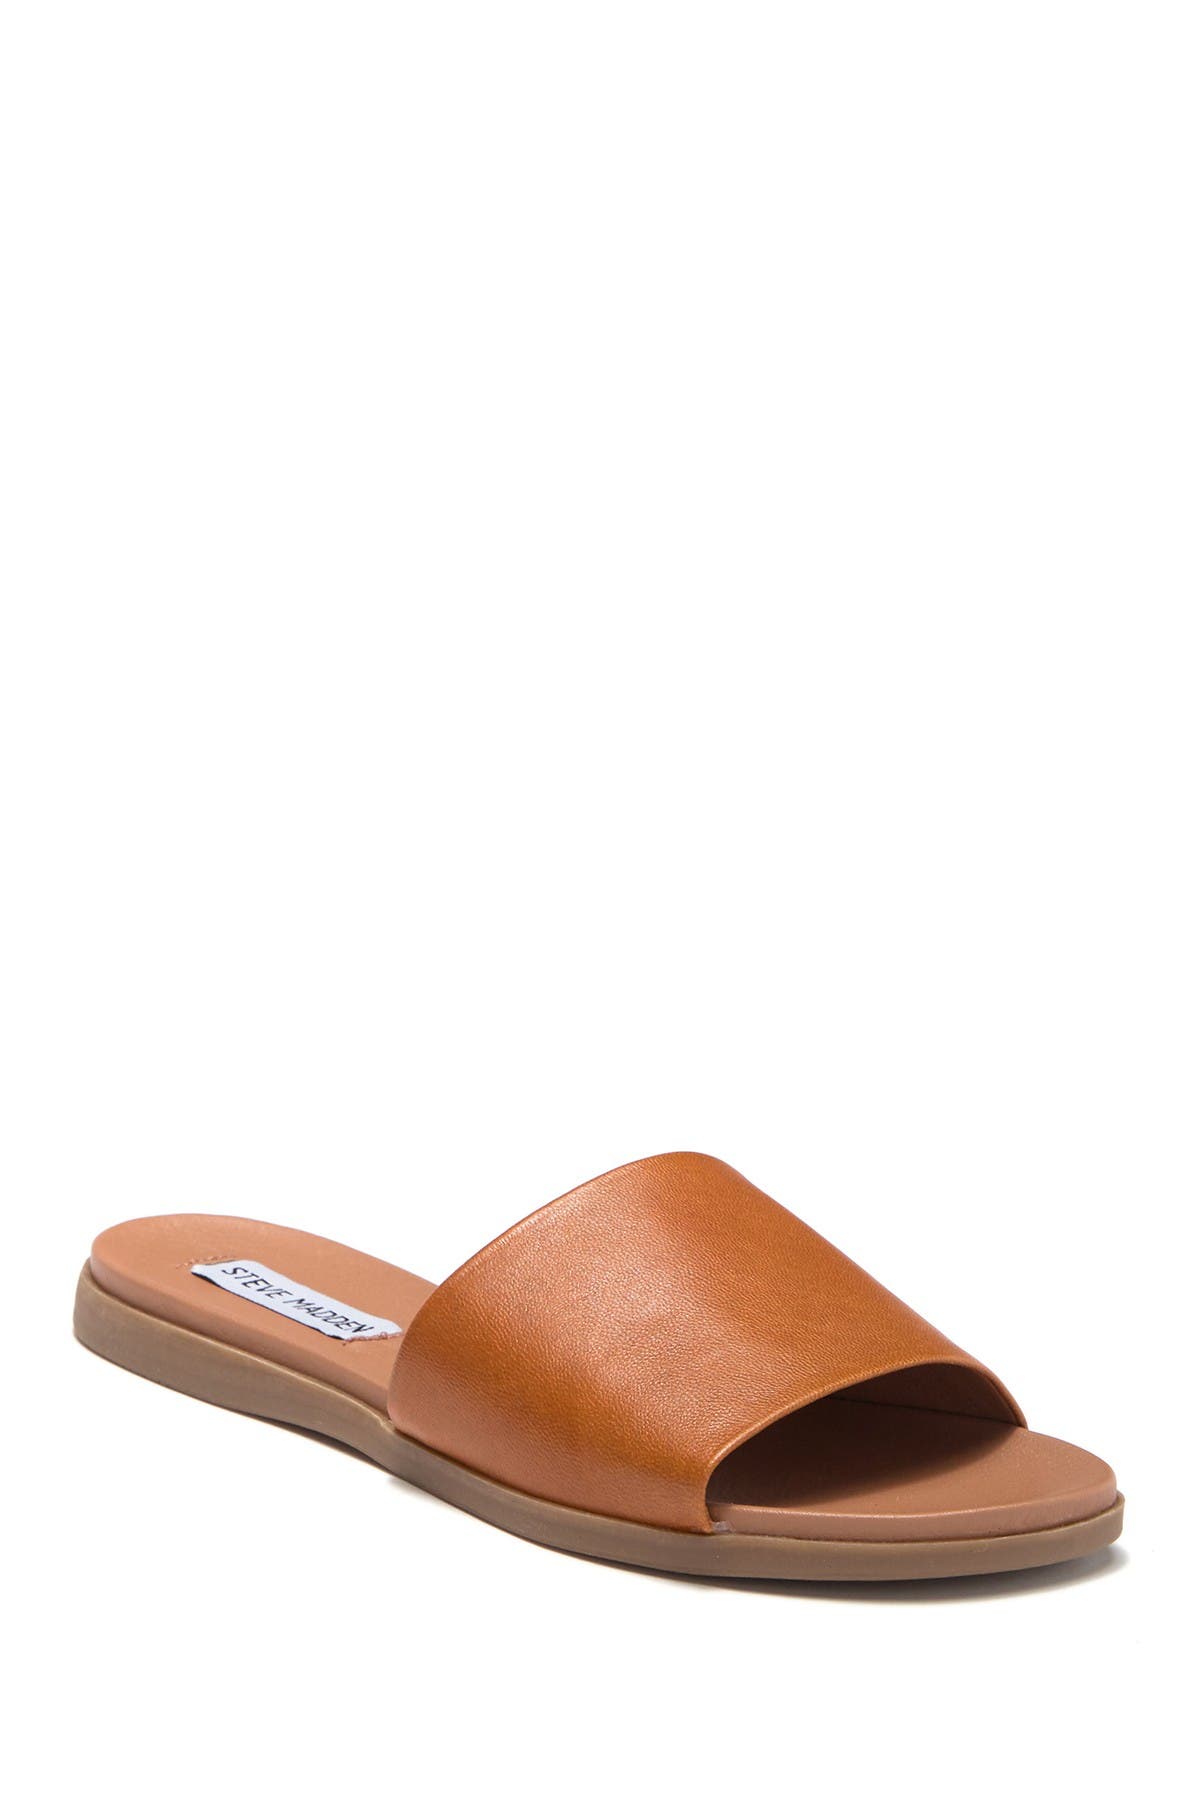 Steve Madden Kailey Slide Sandal In Cognac Lea | ModeSens